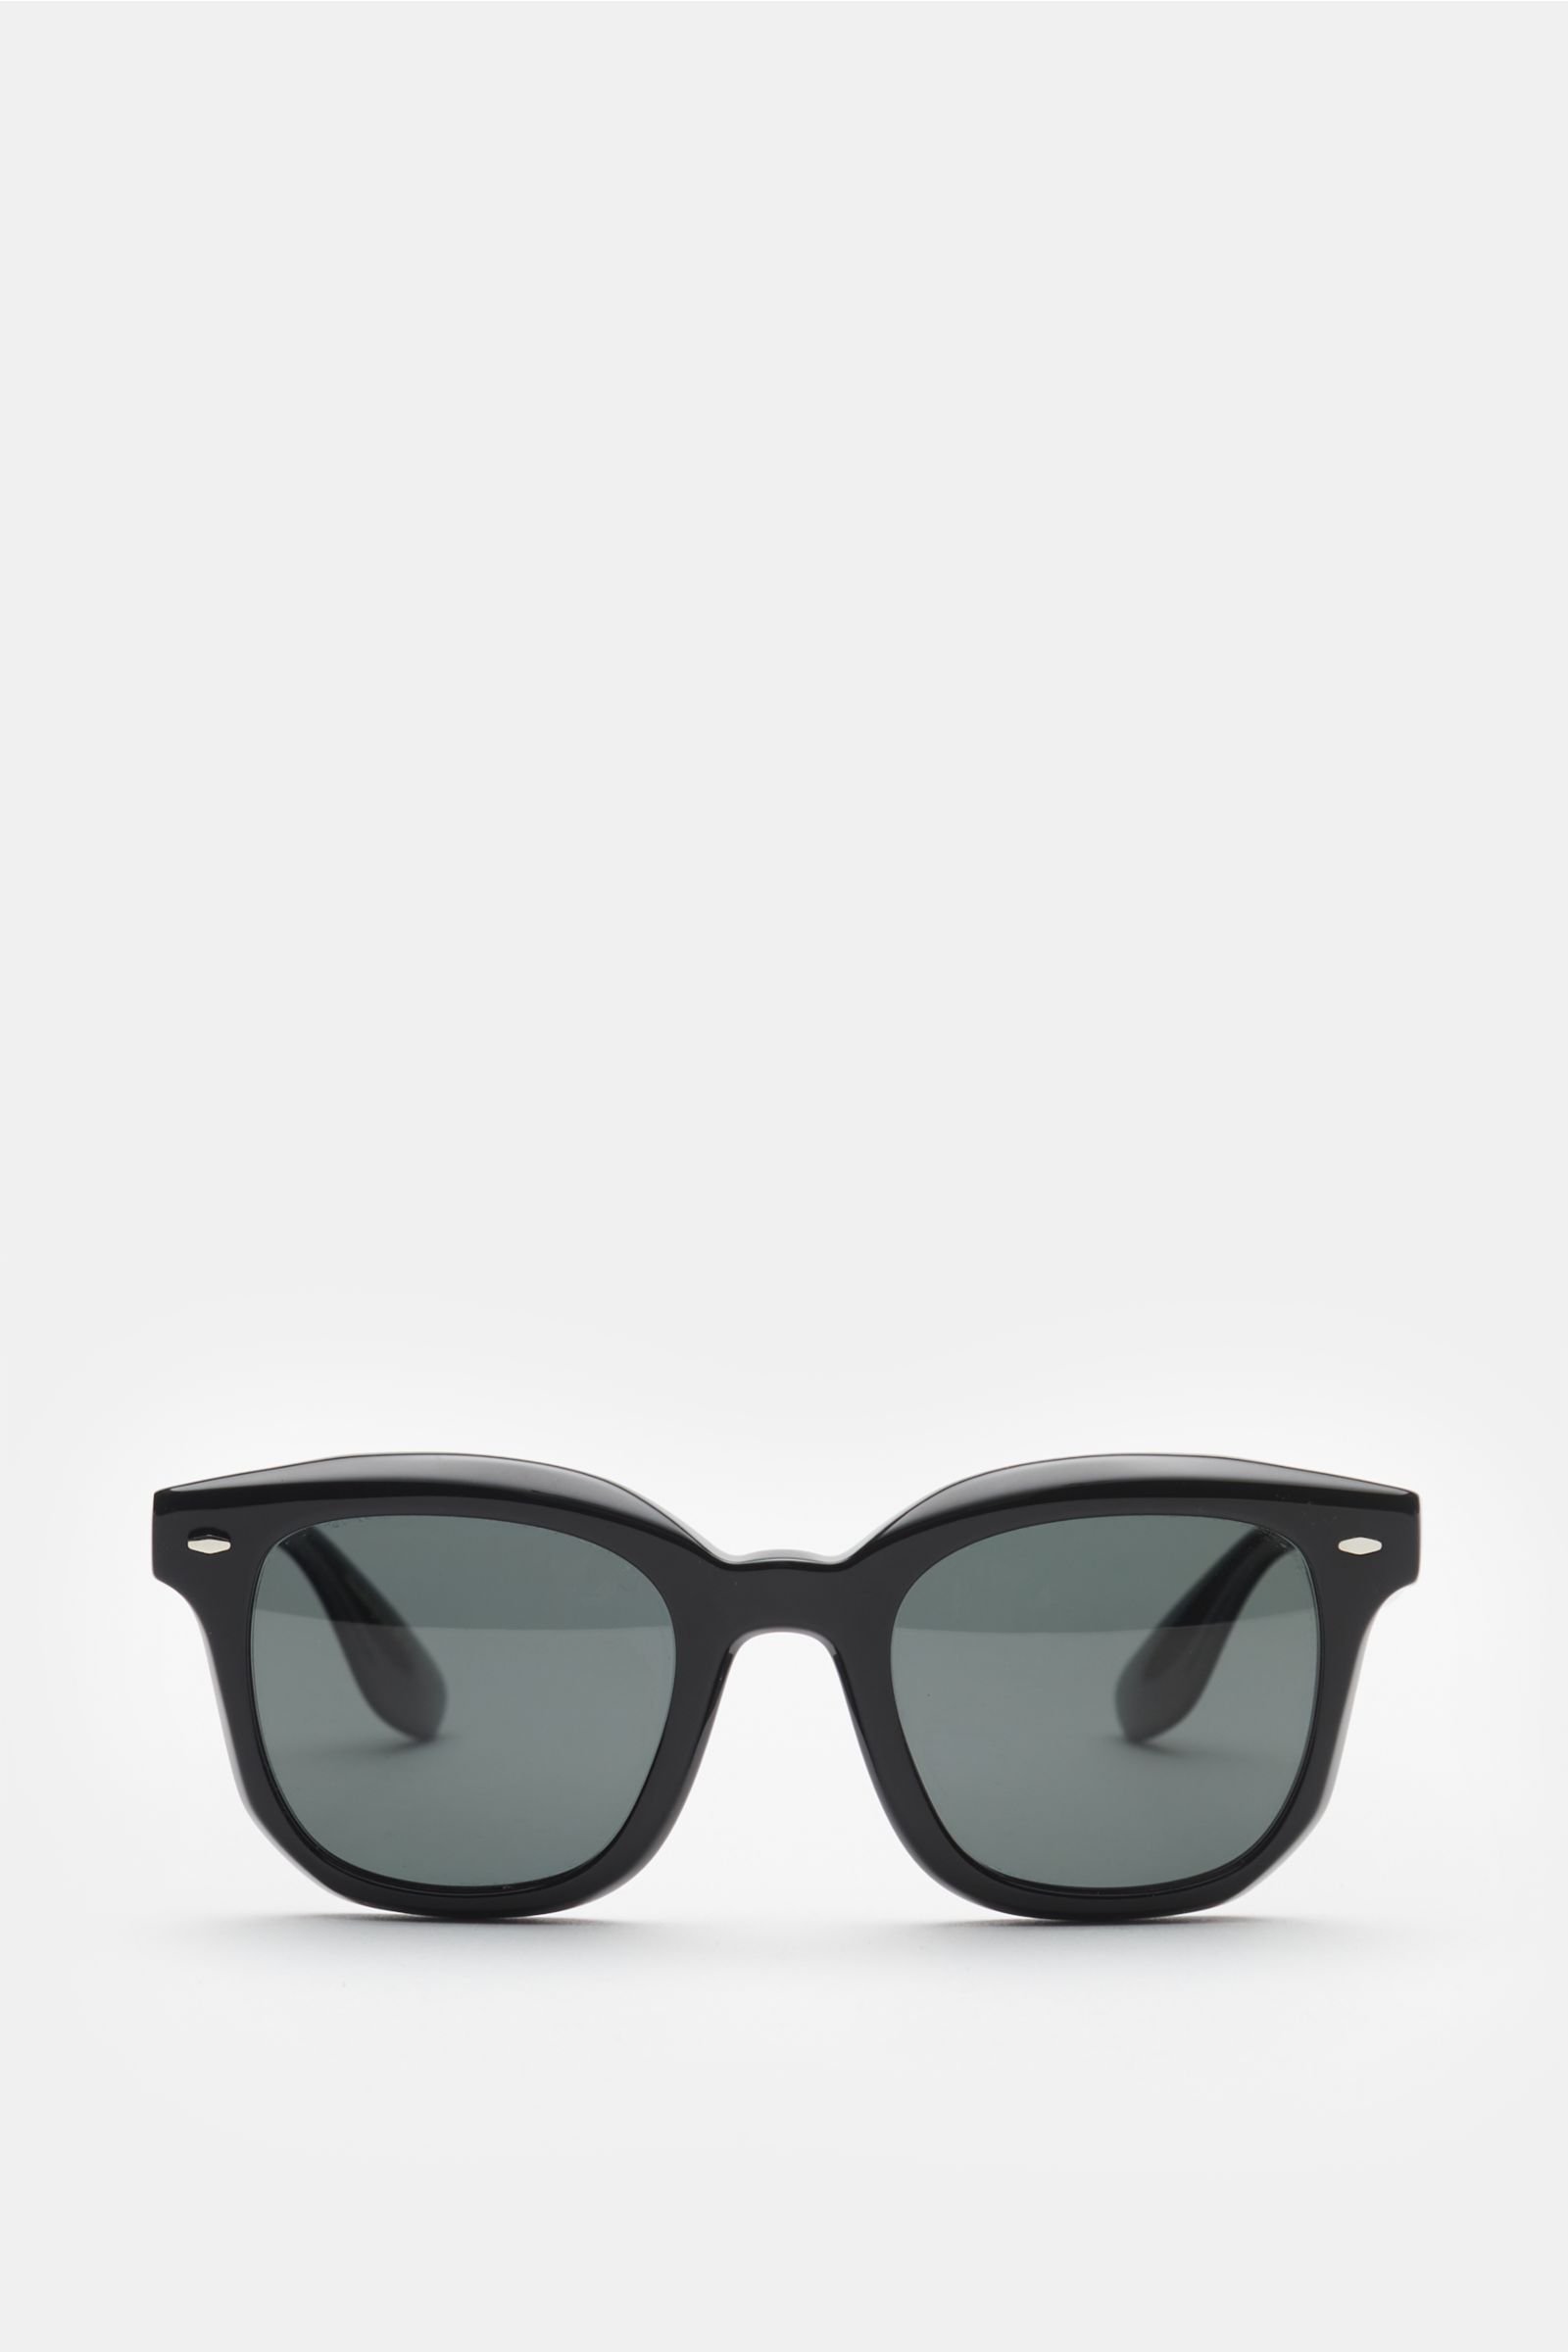 Sonnenbrille 'Filù' schwarz/graublau